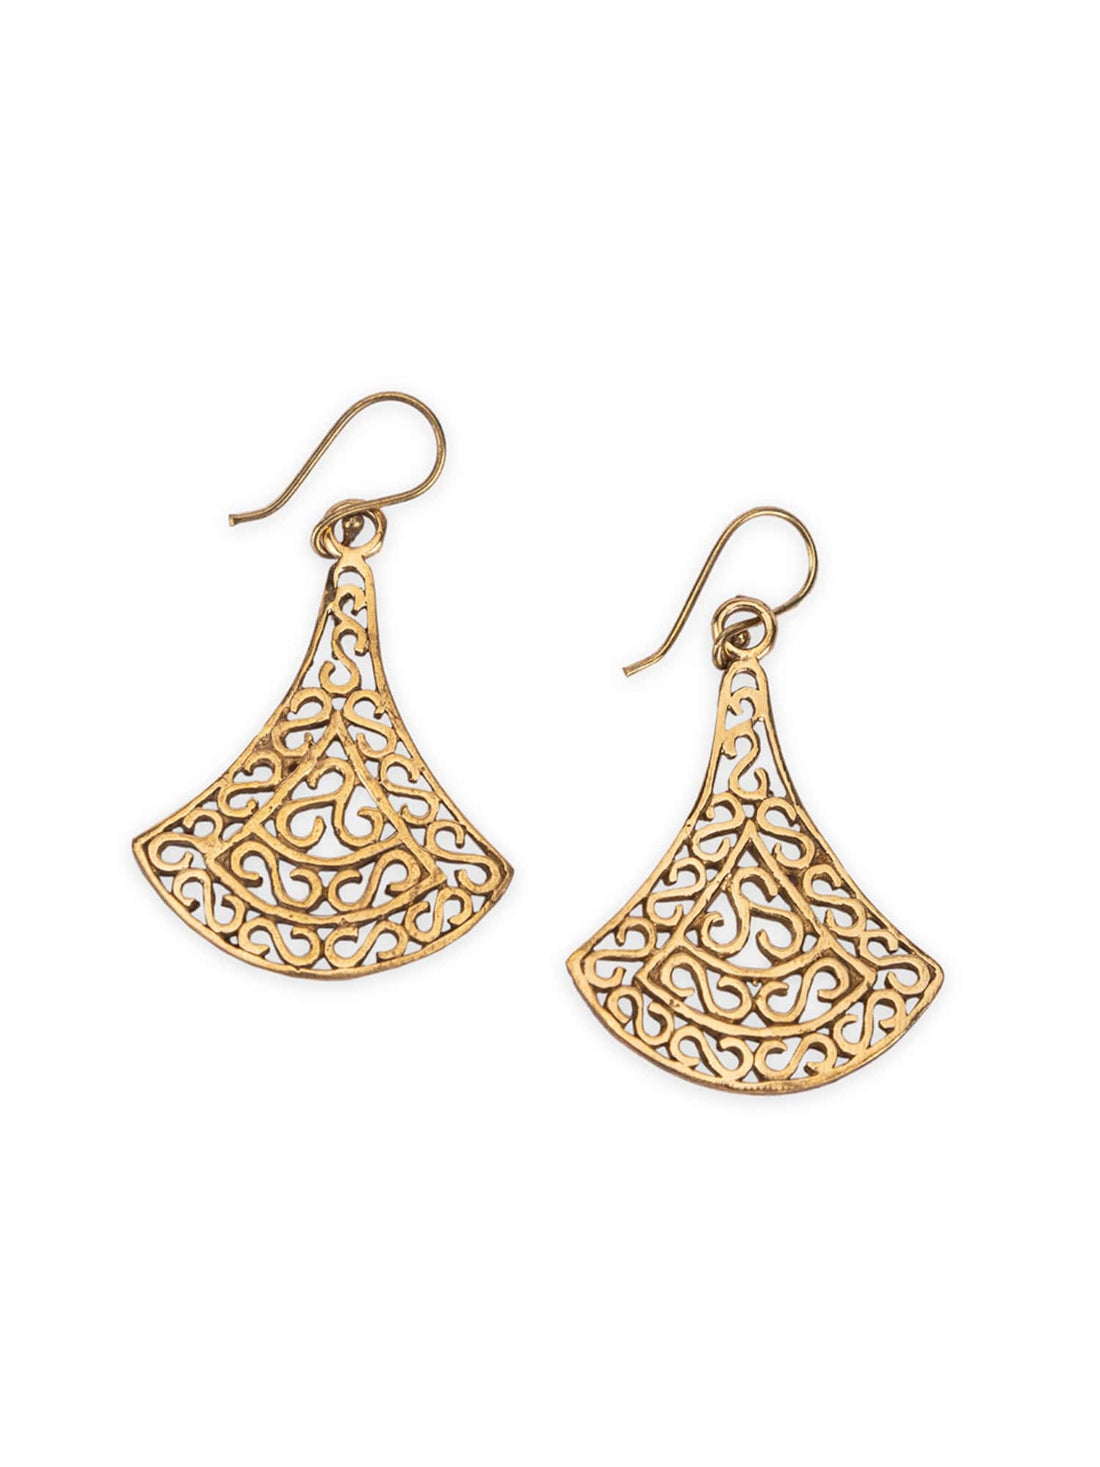 Daily Wear Drops & Danglers Earrings - Ethnic Elegance Gold-Plated Brass Earrings By Studio One Love